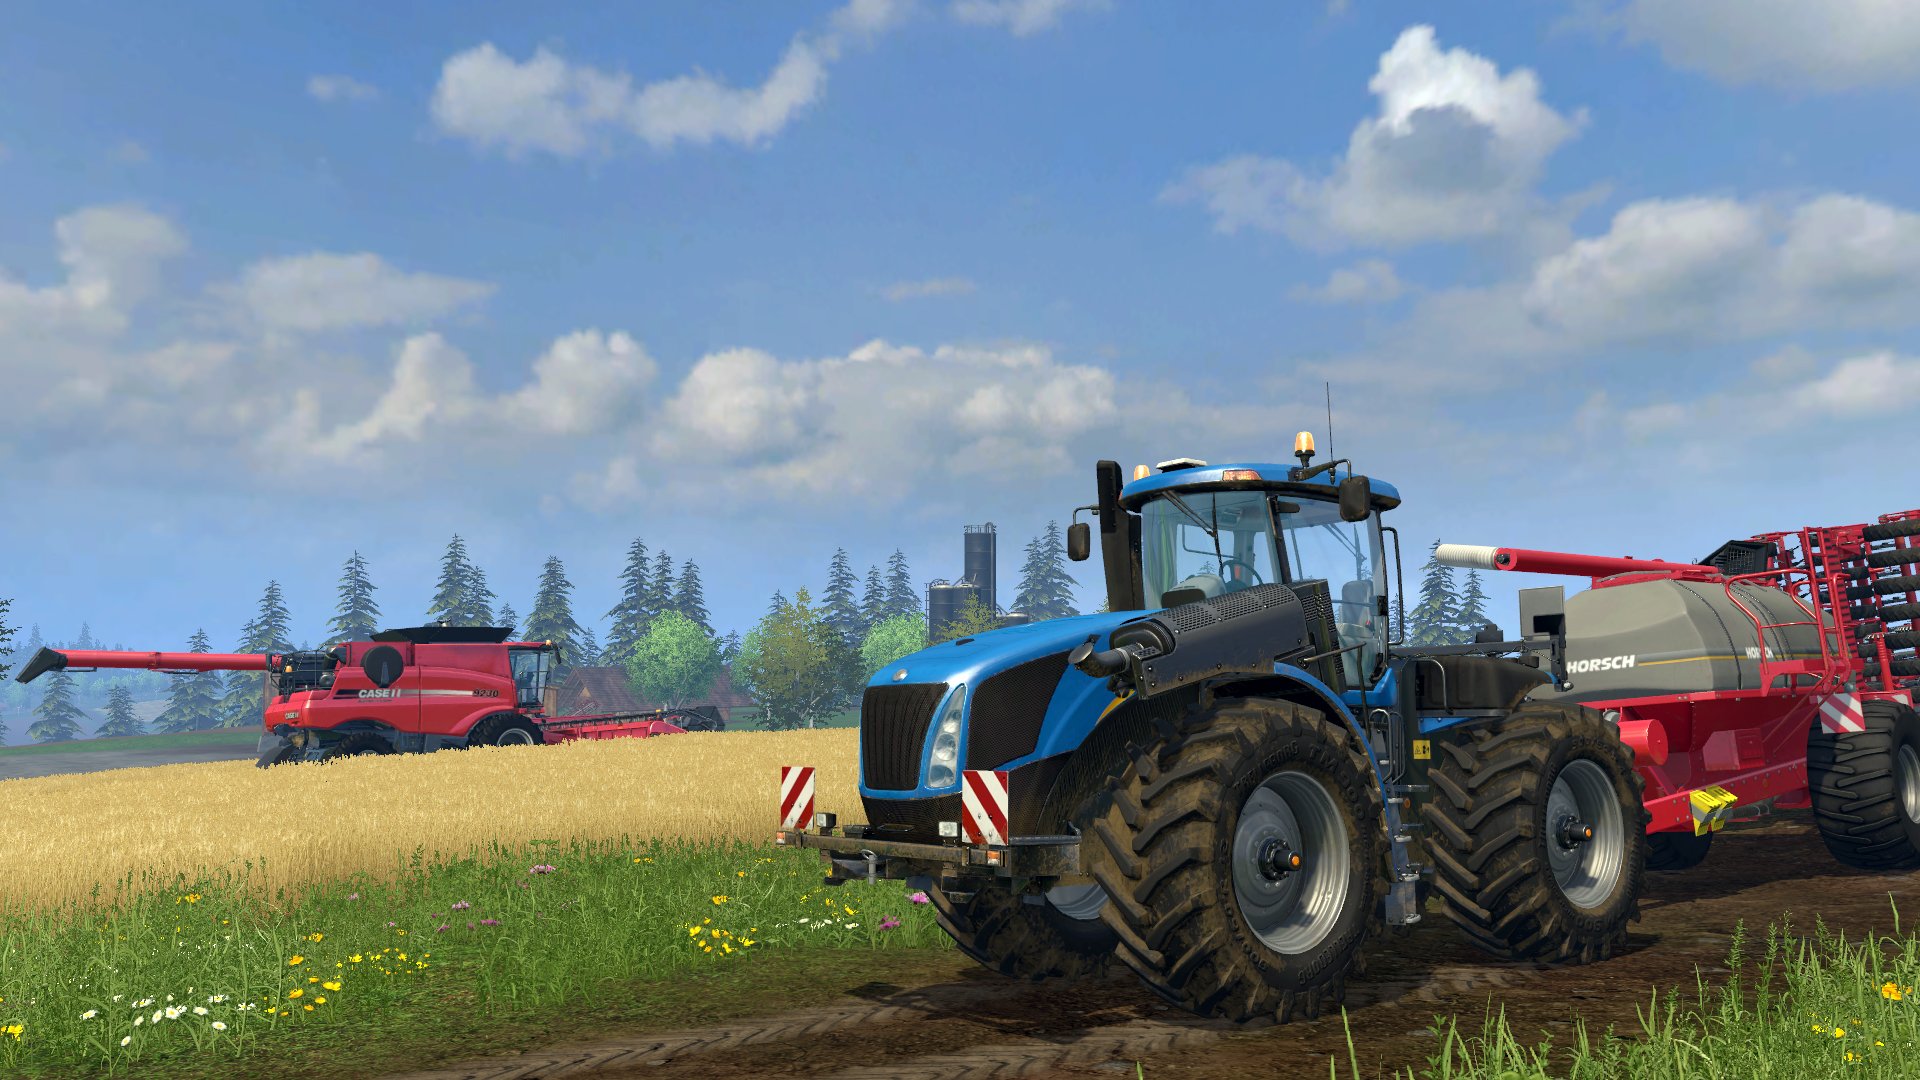 Farming Simulator 15 with a warranty ✅ | offline